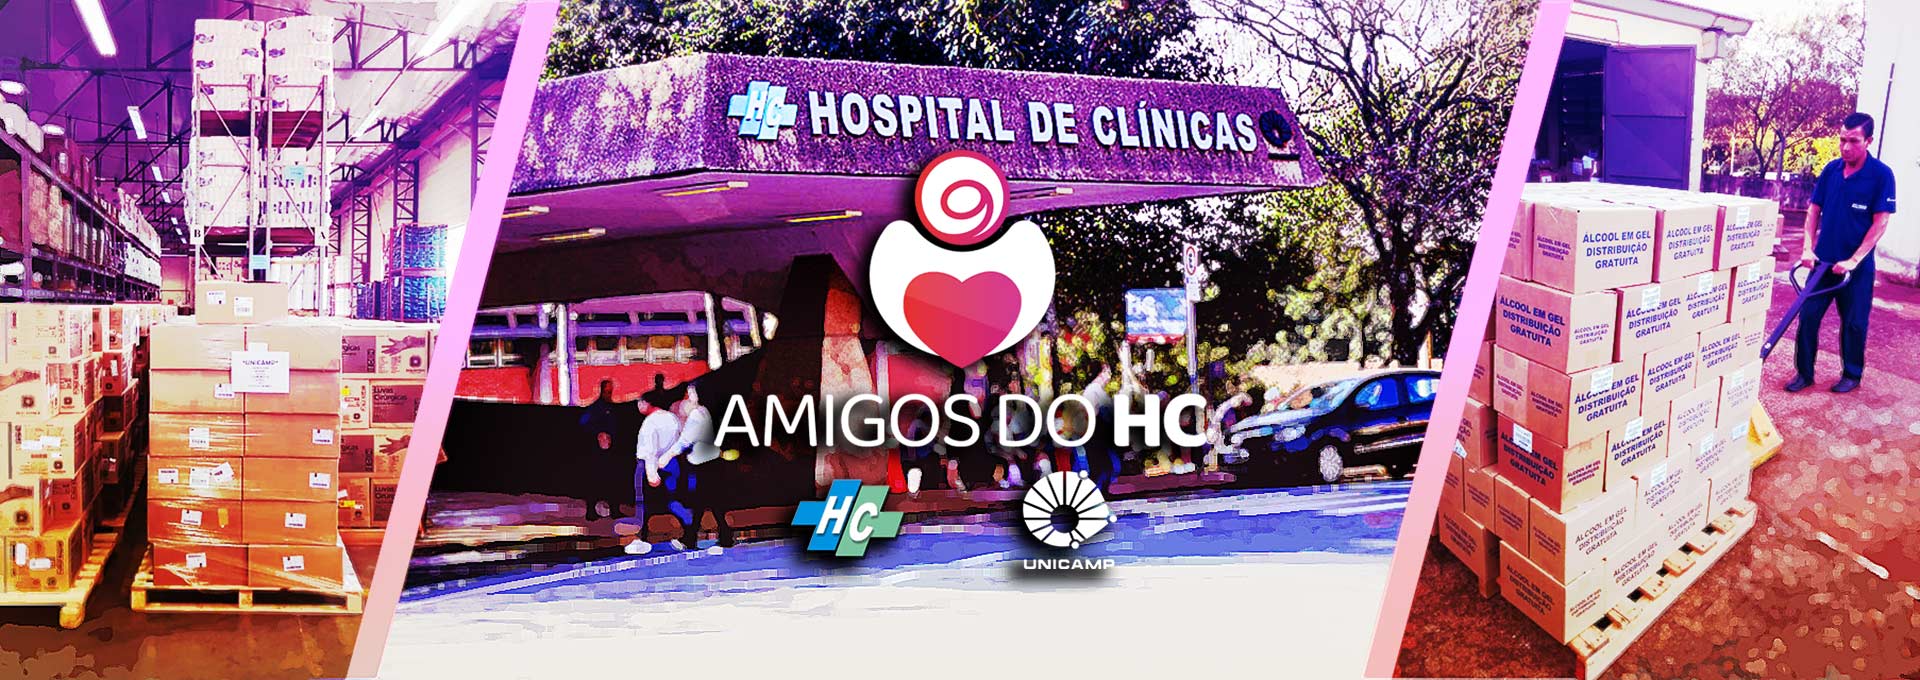 montagem mostra a fachada do hospital de clínicas ao centro com caixas de doações nas laterais. ao centro, há o logo da campanha amigos do hc